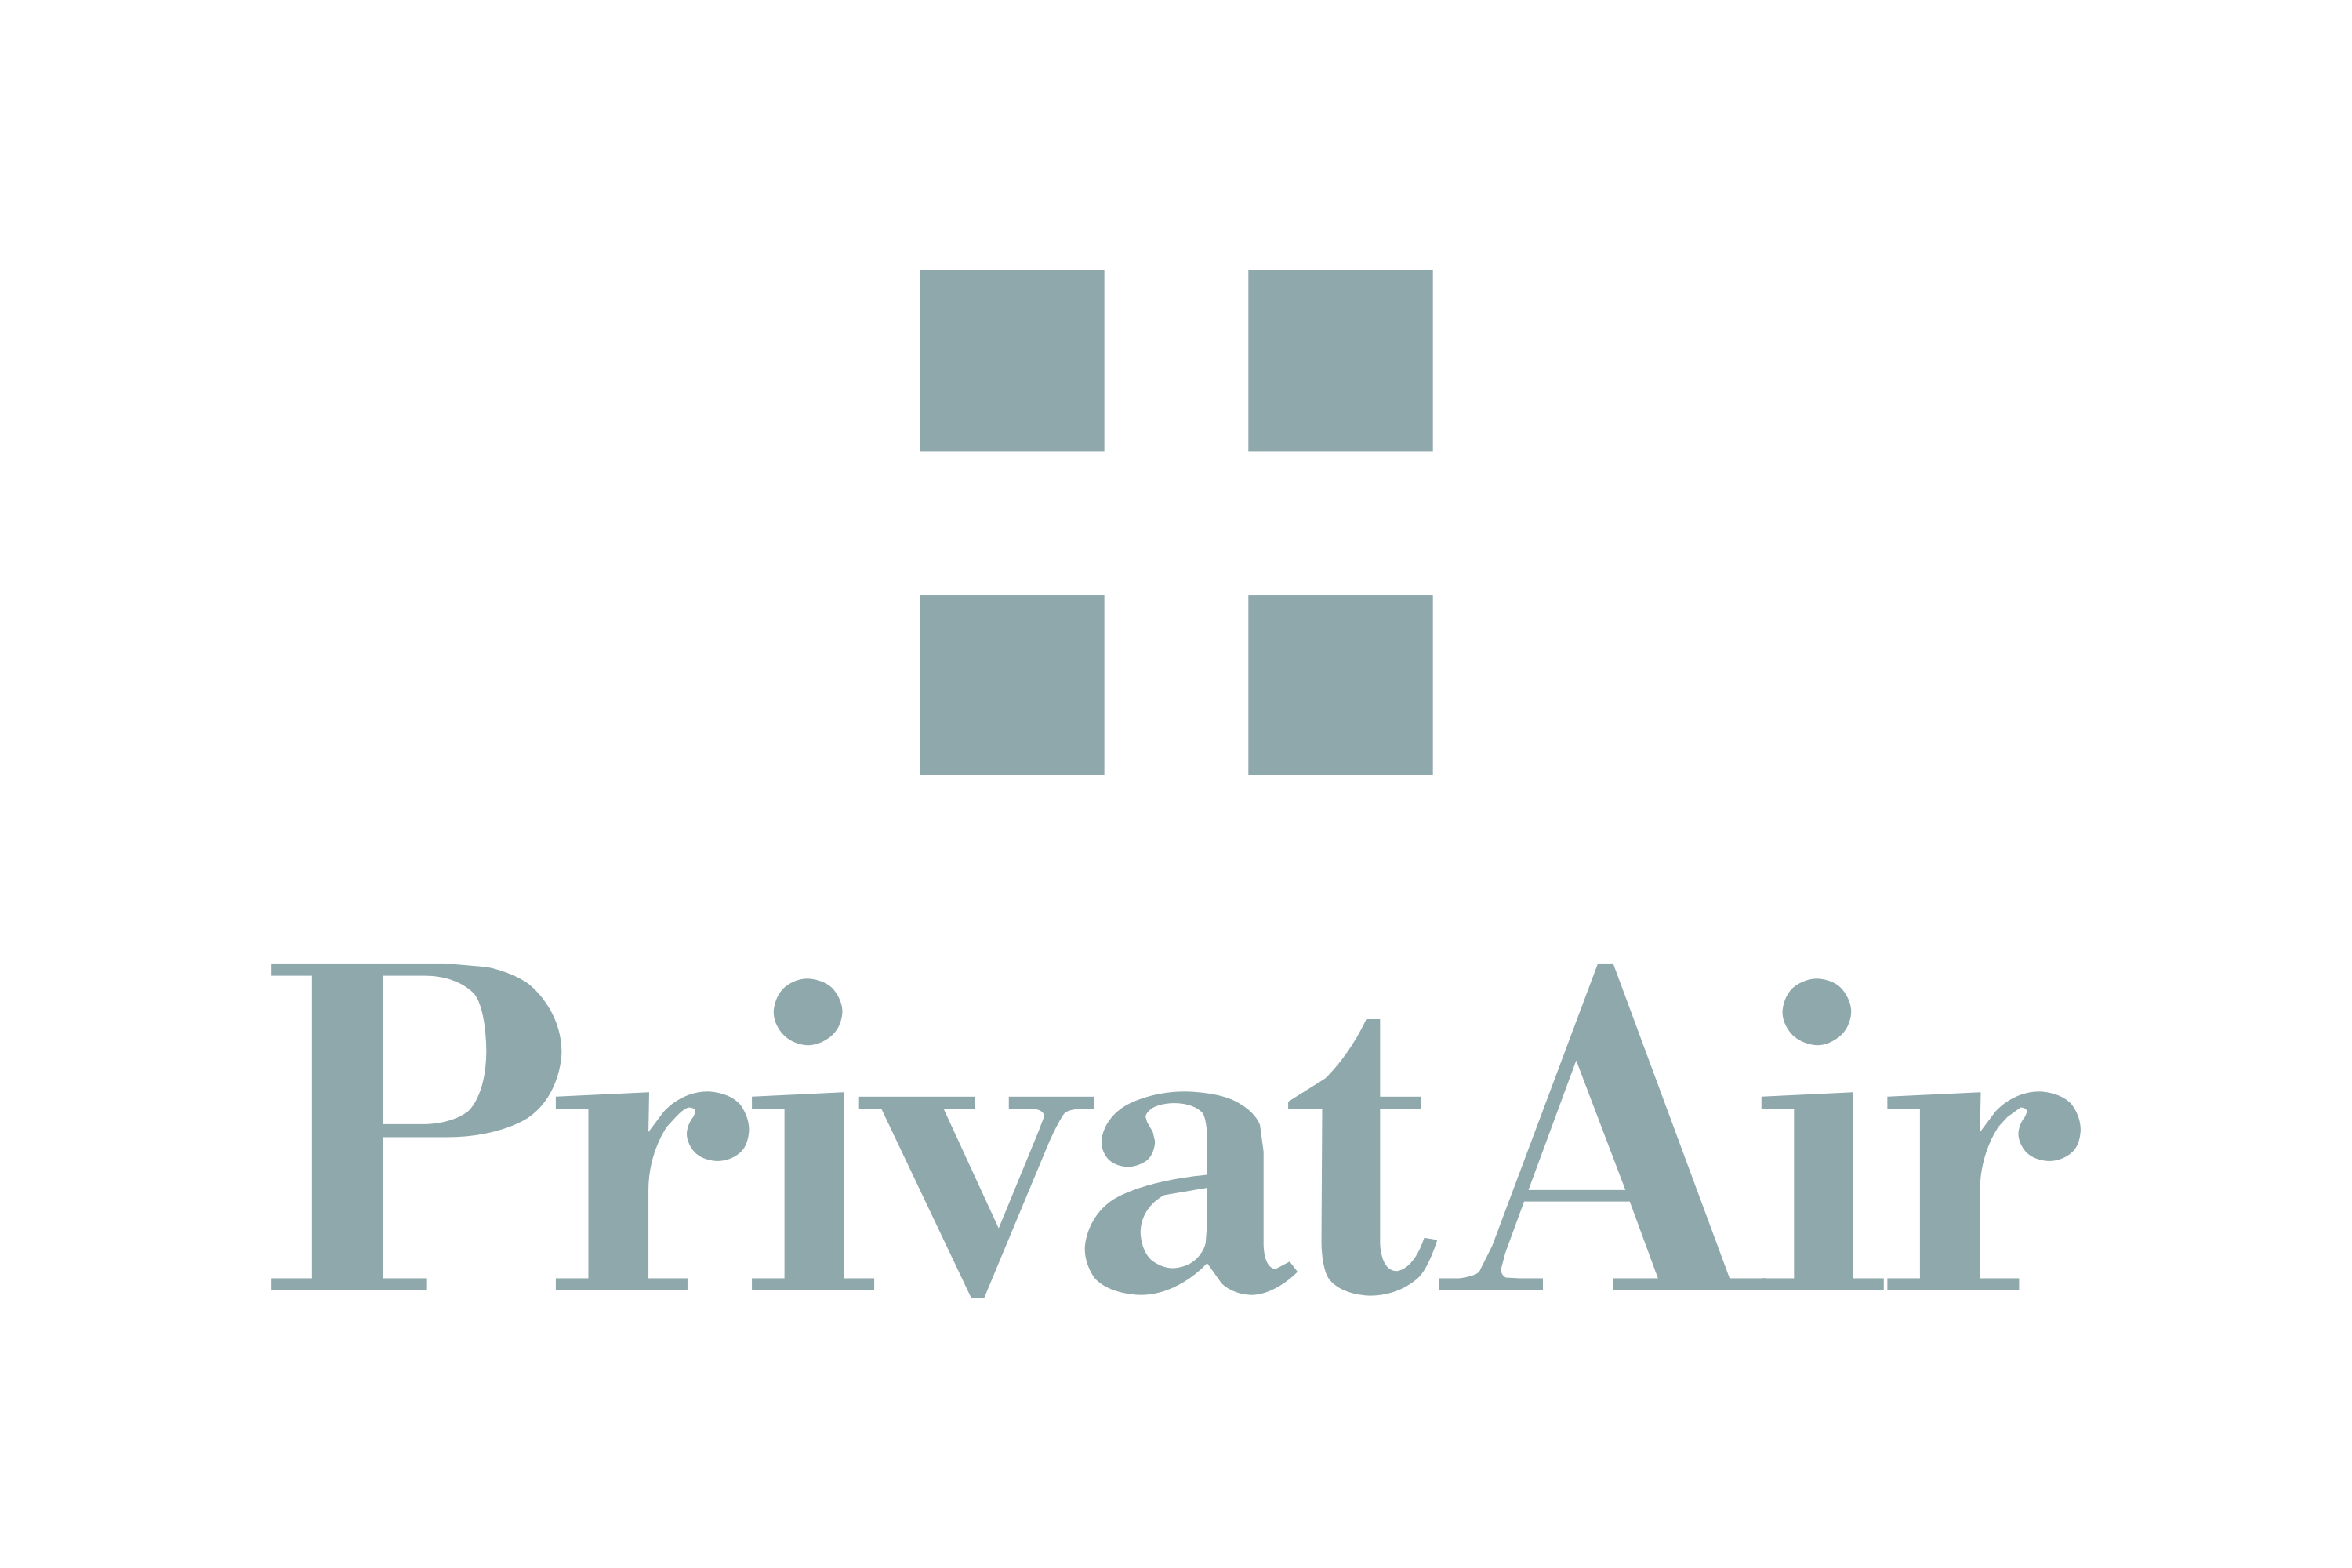 PrivatAir Logo